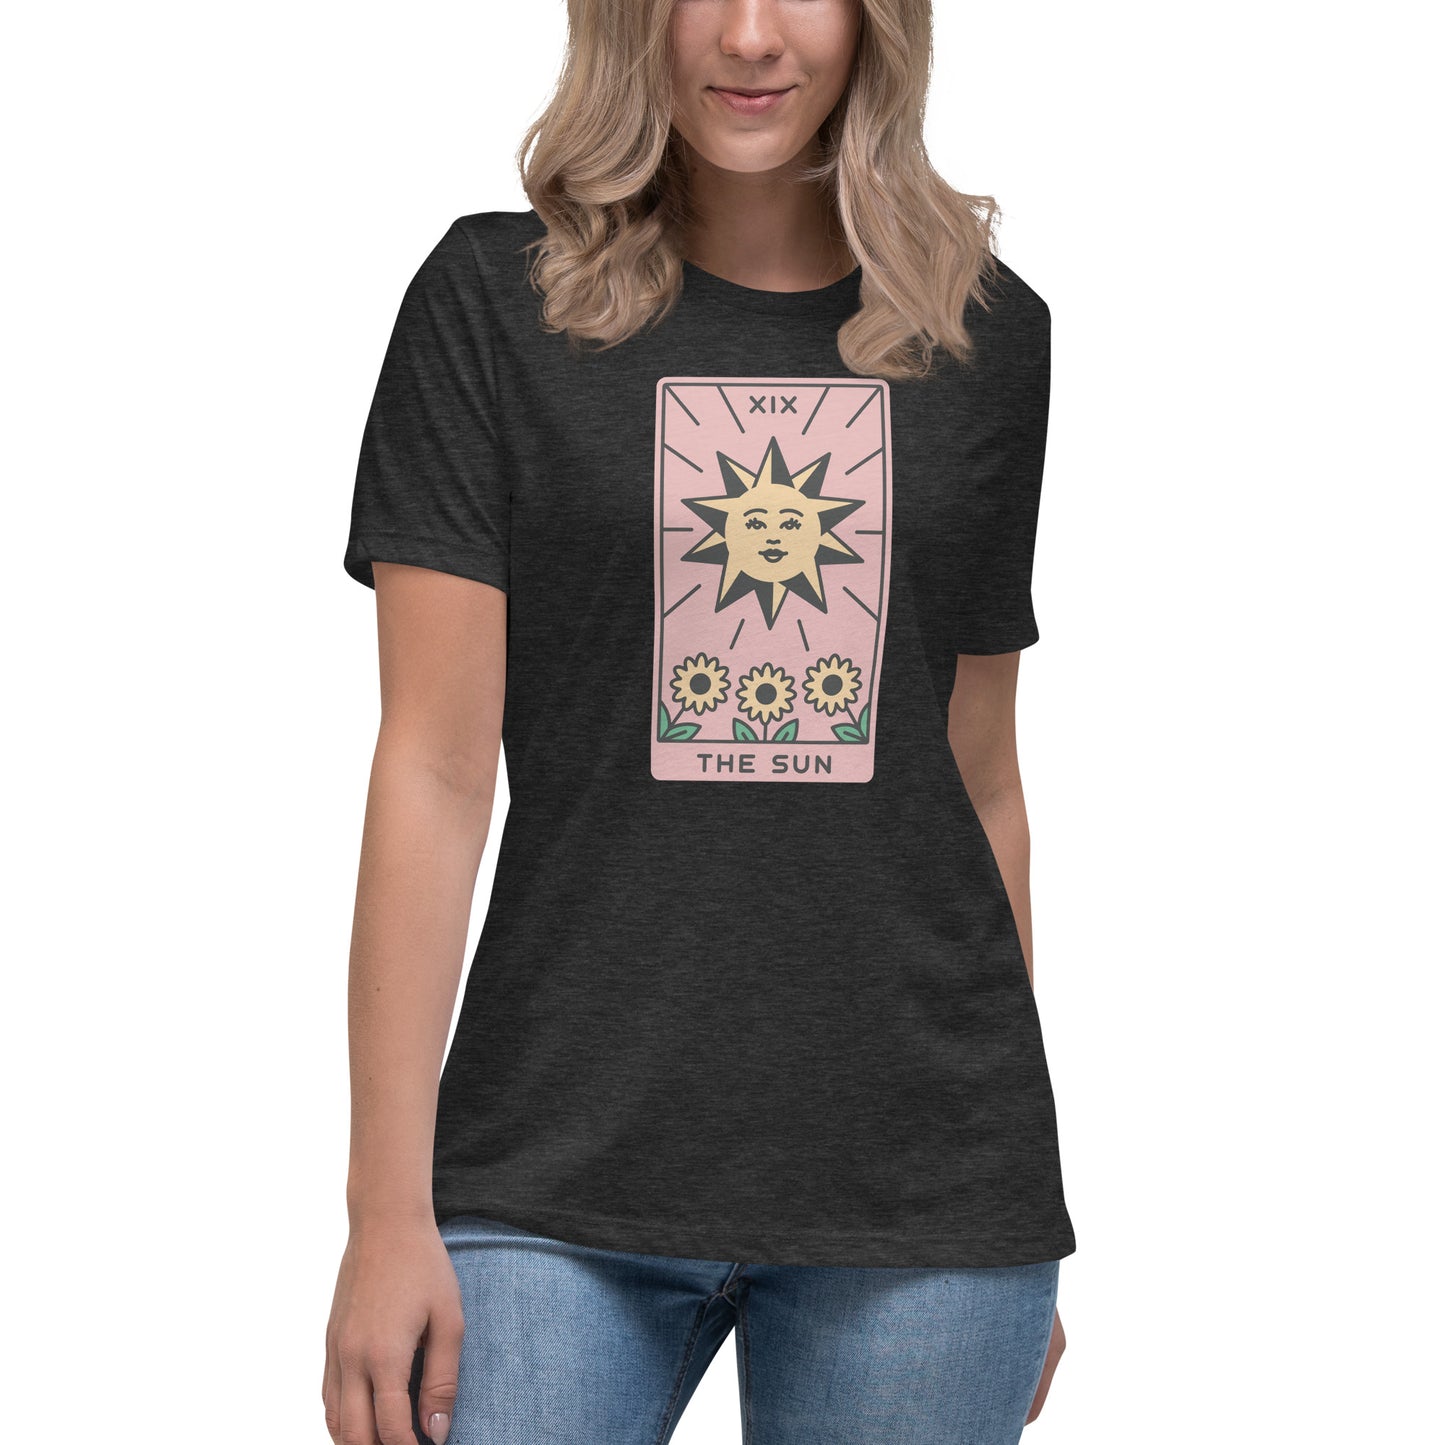 The Sun T-Shirt